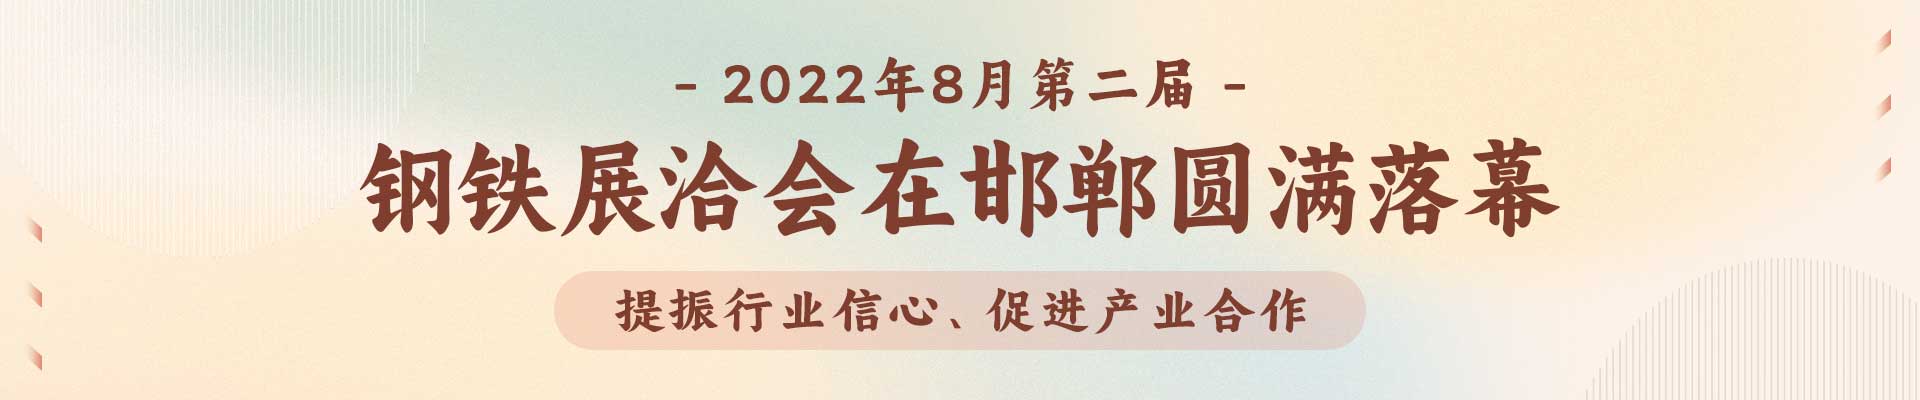 提振行业信心、促进产业合作，第二届钢铁展洽会2022年8月在邯郸圆满落幕